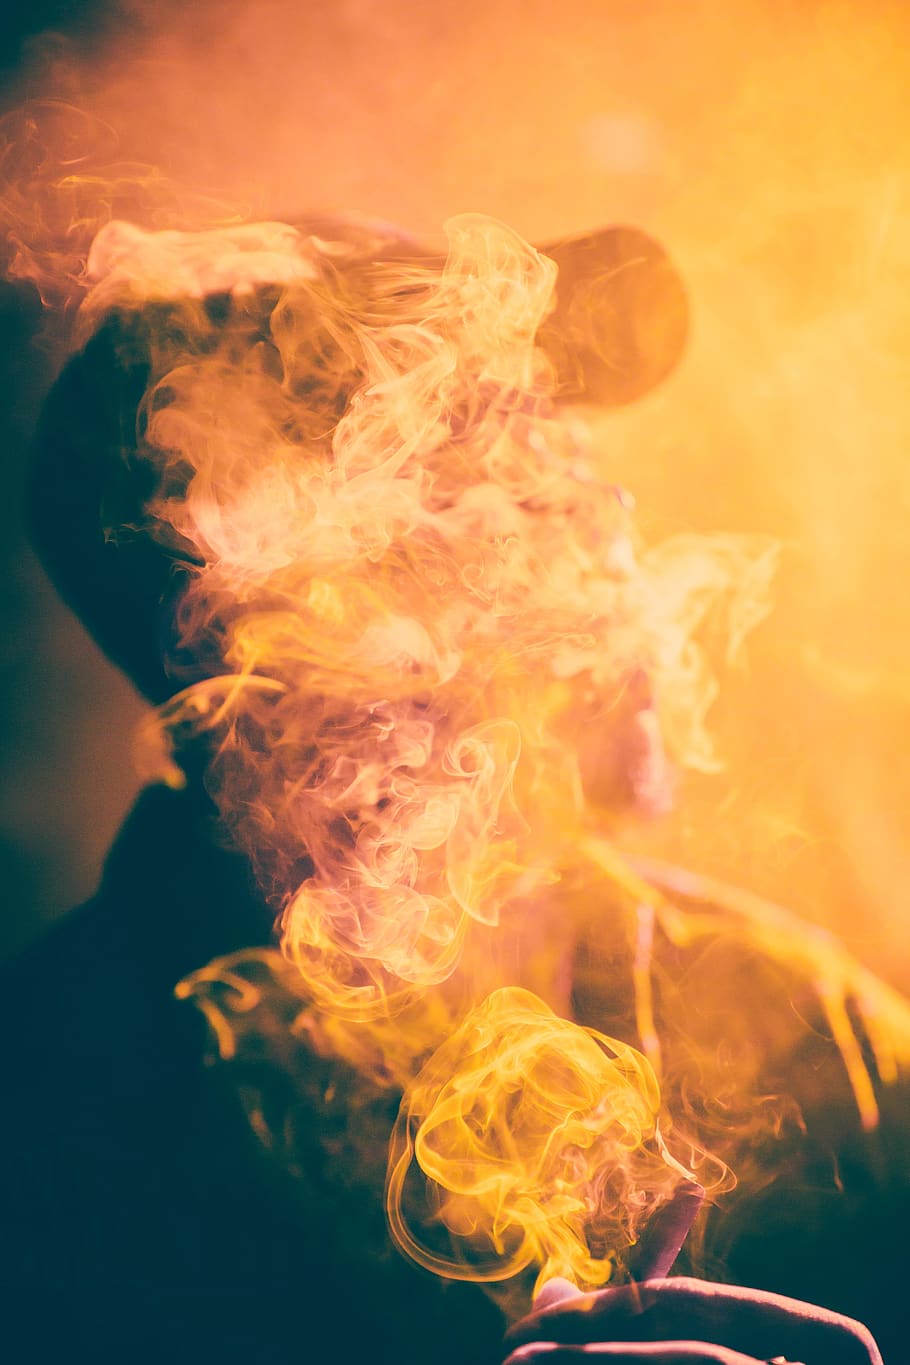 gente, hombre, fumar, calor - temperatura, ardor, color naranja, humo - estructura física, primer plano, fuego, fuego - fenómeno natural